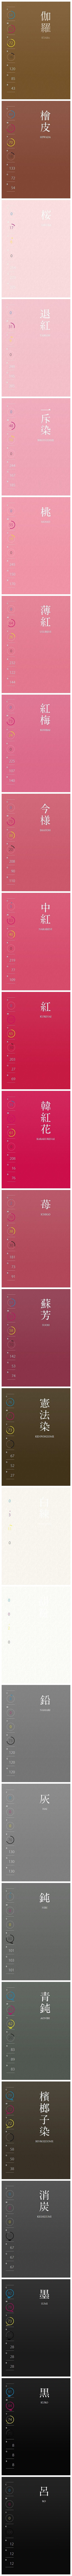 有库粉私信：“想要这一套配色方案？”一组日本设计师配色方案必备集合，非常详细，每个名称，每个色值都有标注，无水印，可以自己收藏，转需吧~